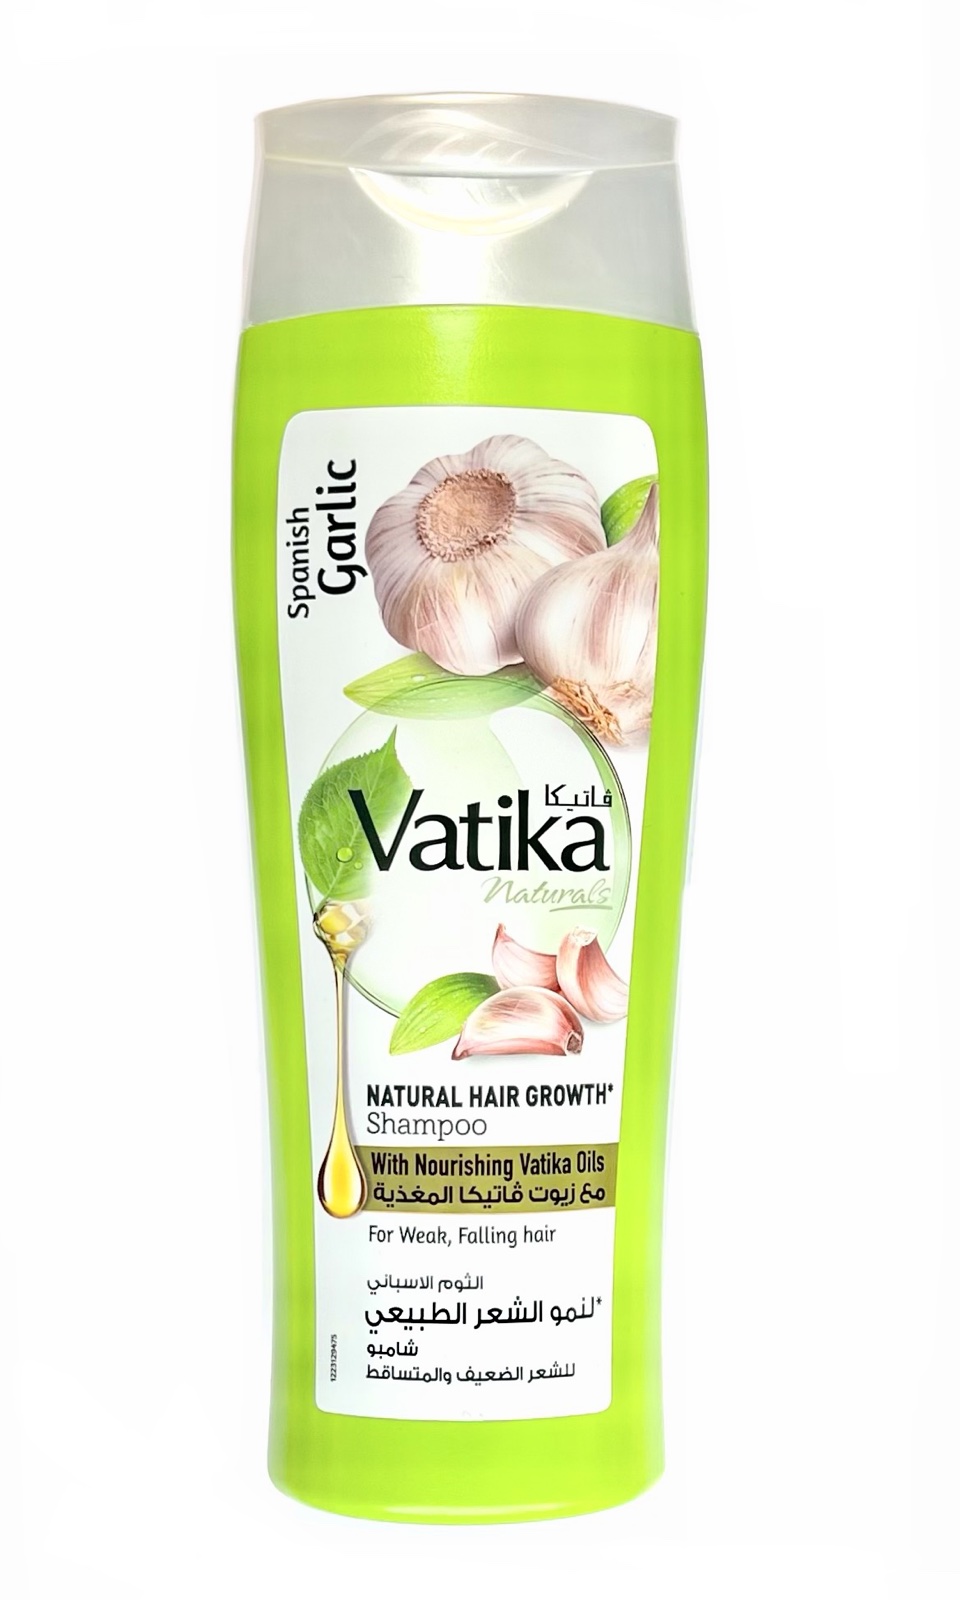 Vatika SPANISH GARLIC Natural Hair Growth Shampoo, Dabur (Ватика ИСПАНСКИЙ ЧЕСНОК Шампунь ДЛЯ РОСТА ВОЛОС для ослабленных и выпадающих волос, Дабур), 400 мл.